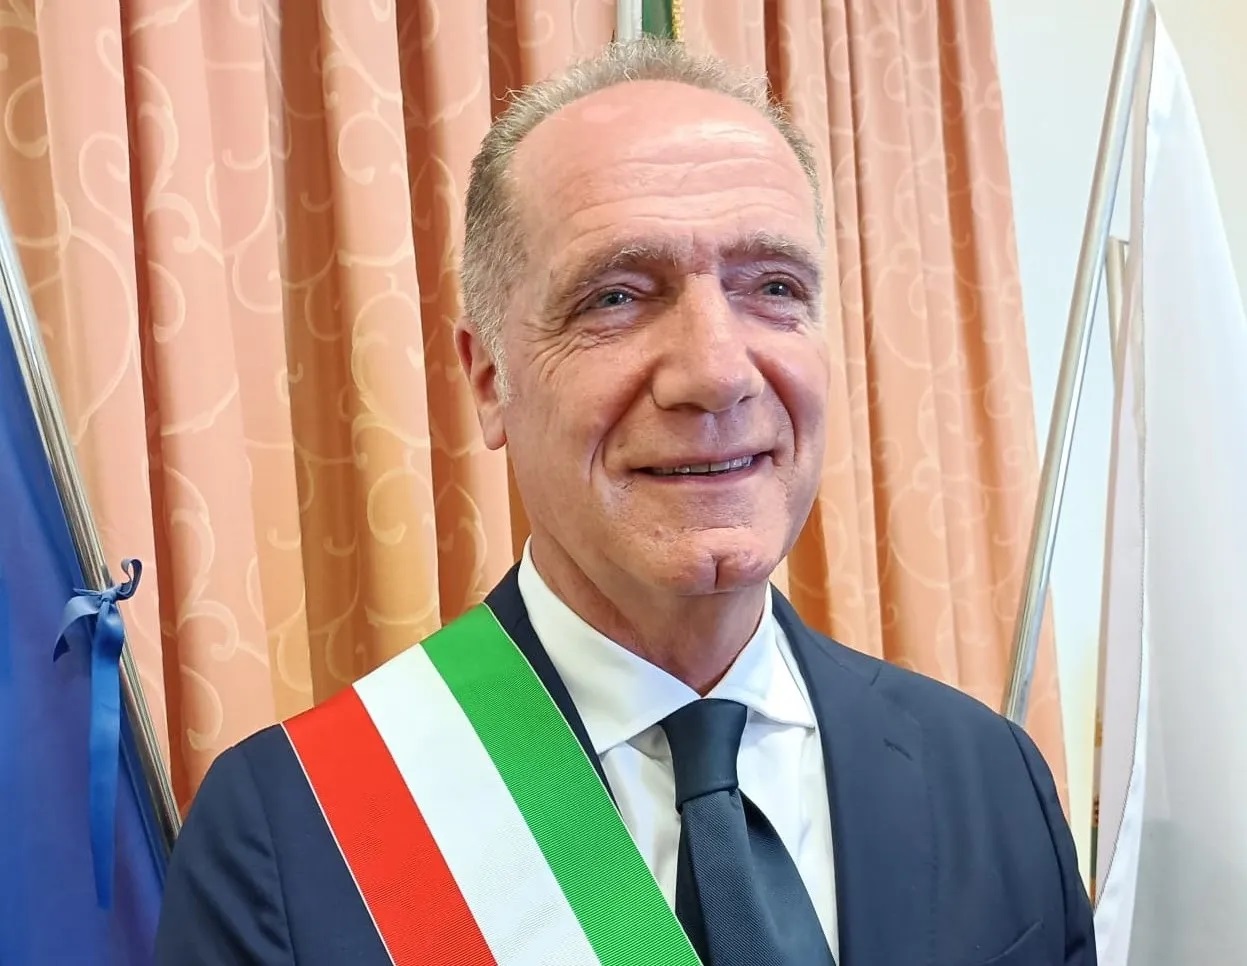 Luigi Mennella2 3